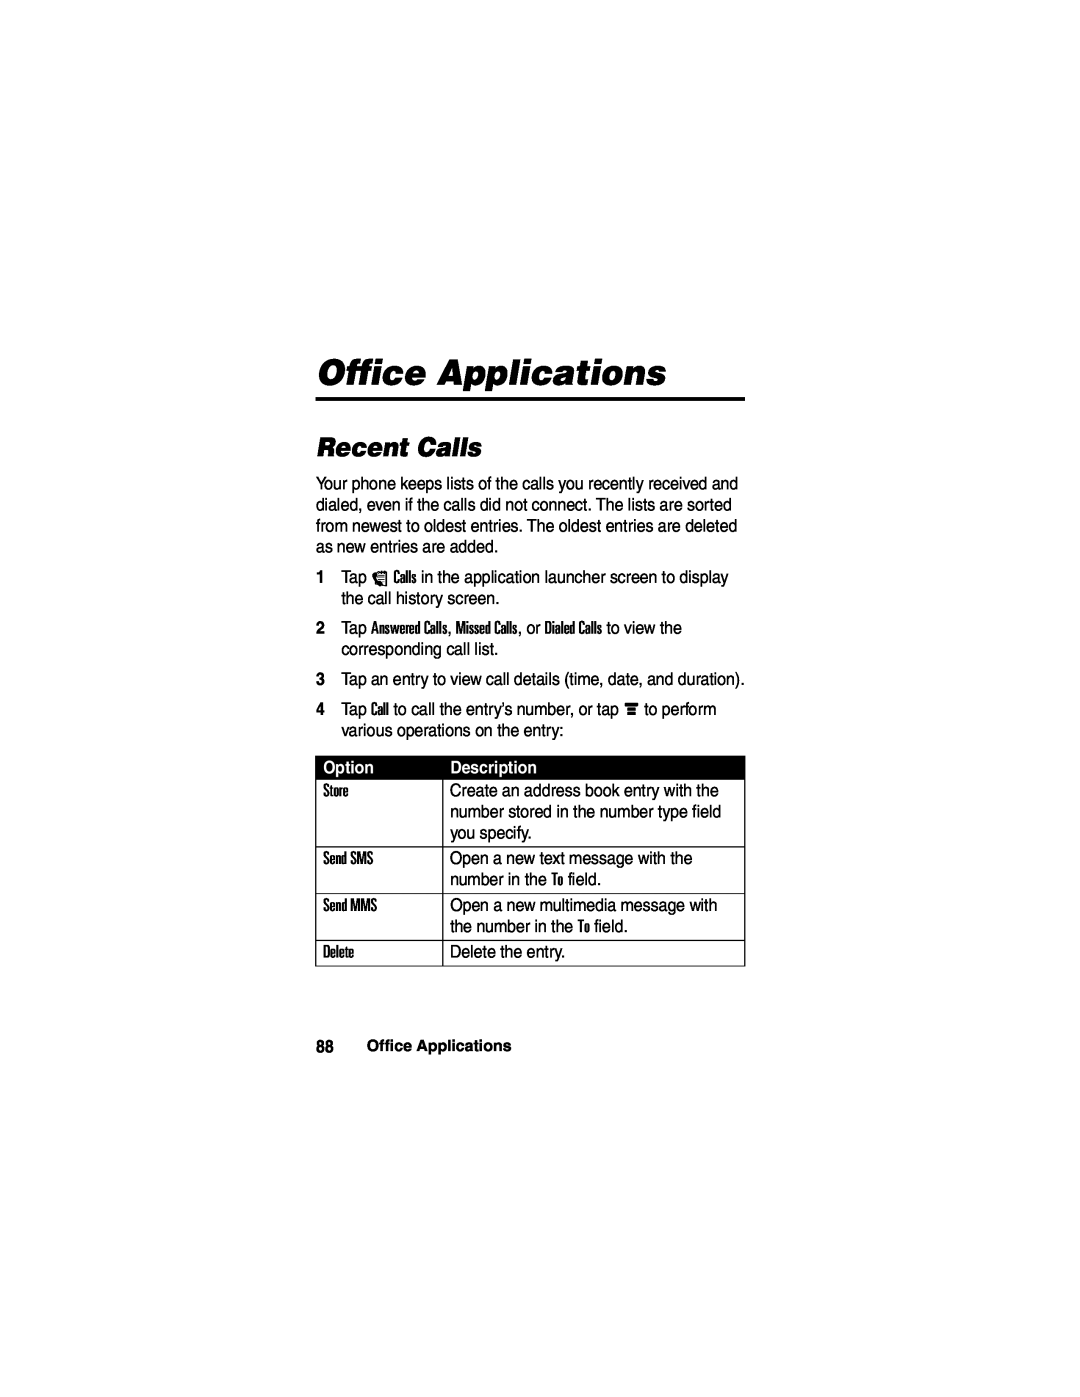 Motorola A780 manual Office Applications, Recent Calls, Option, Description 